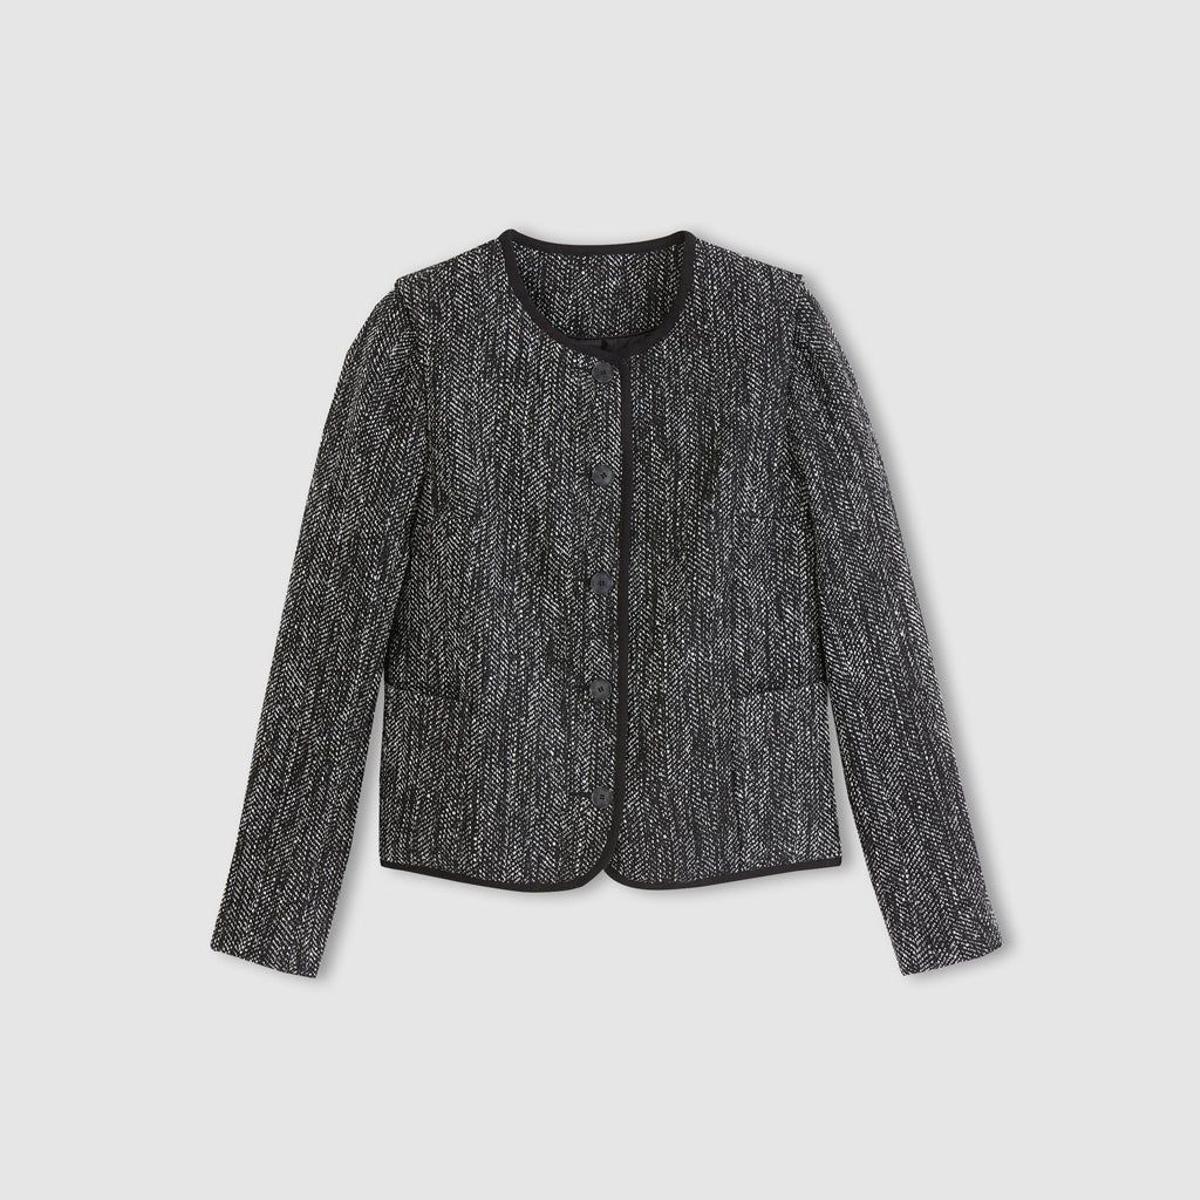 Cómo combinar la chaqueta de tweed